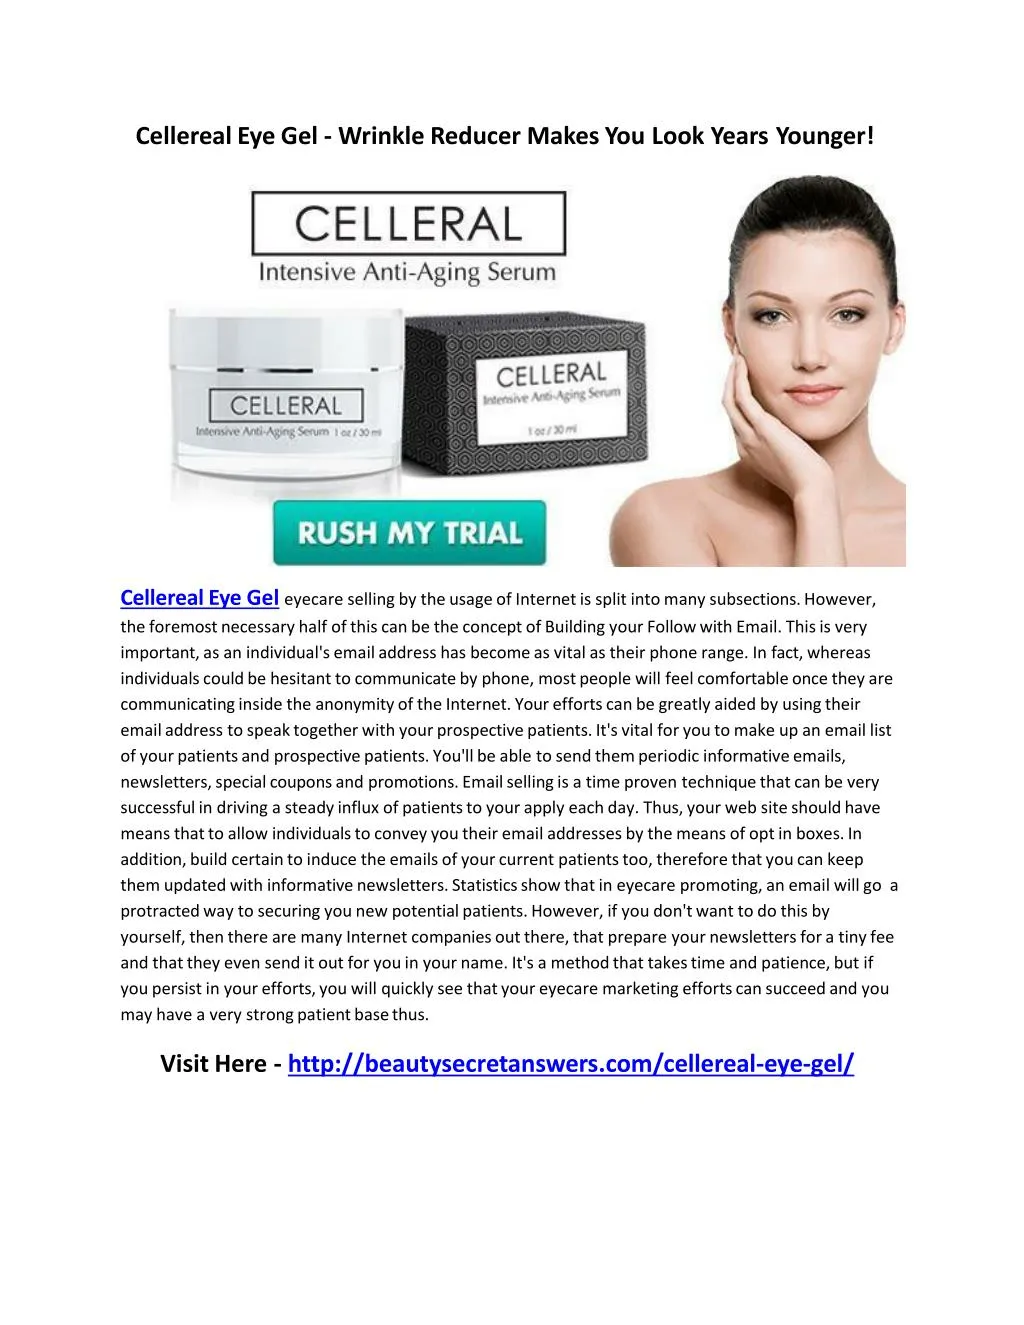 cellereal eye gel wrinkle reducer makes you look